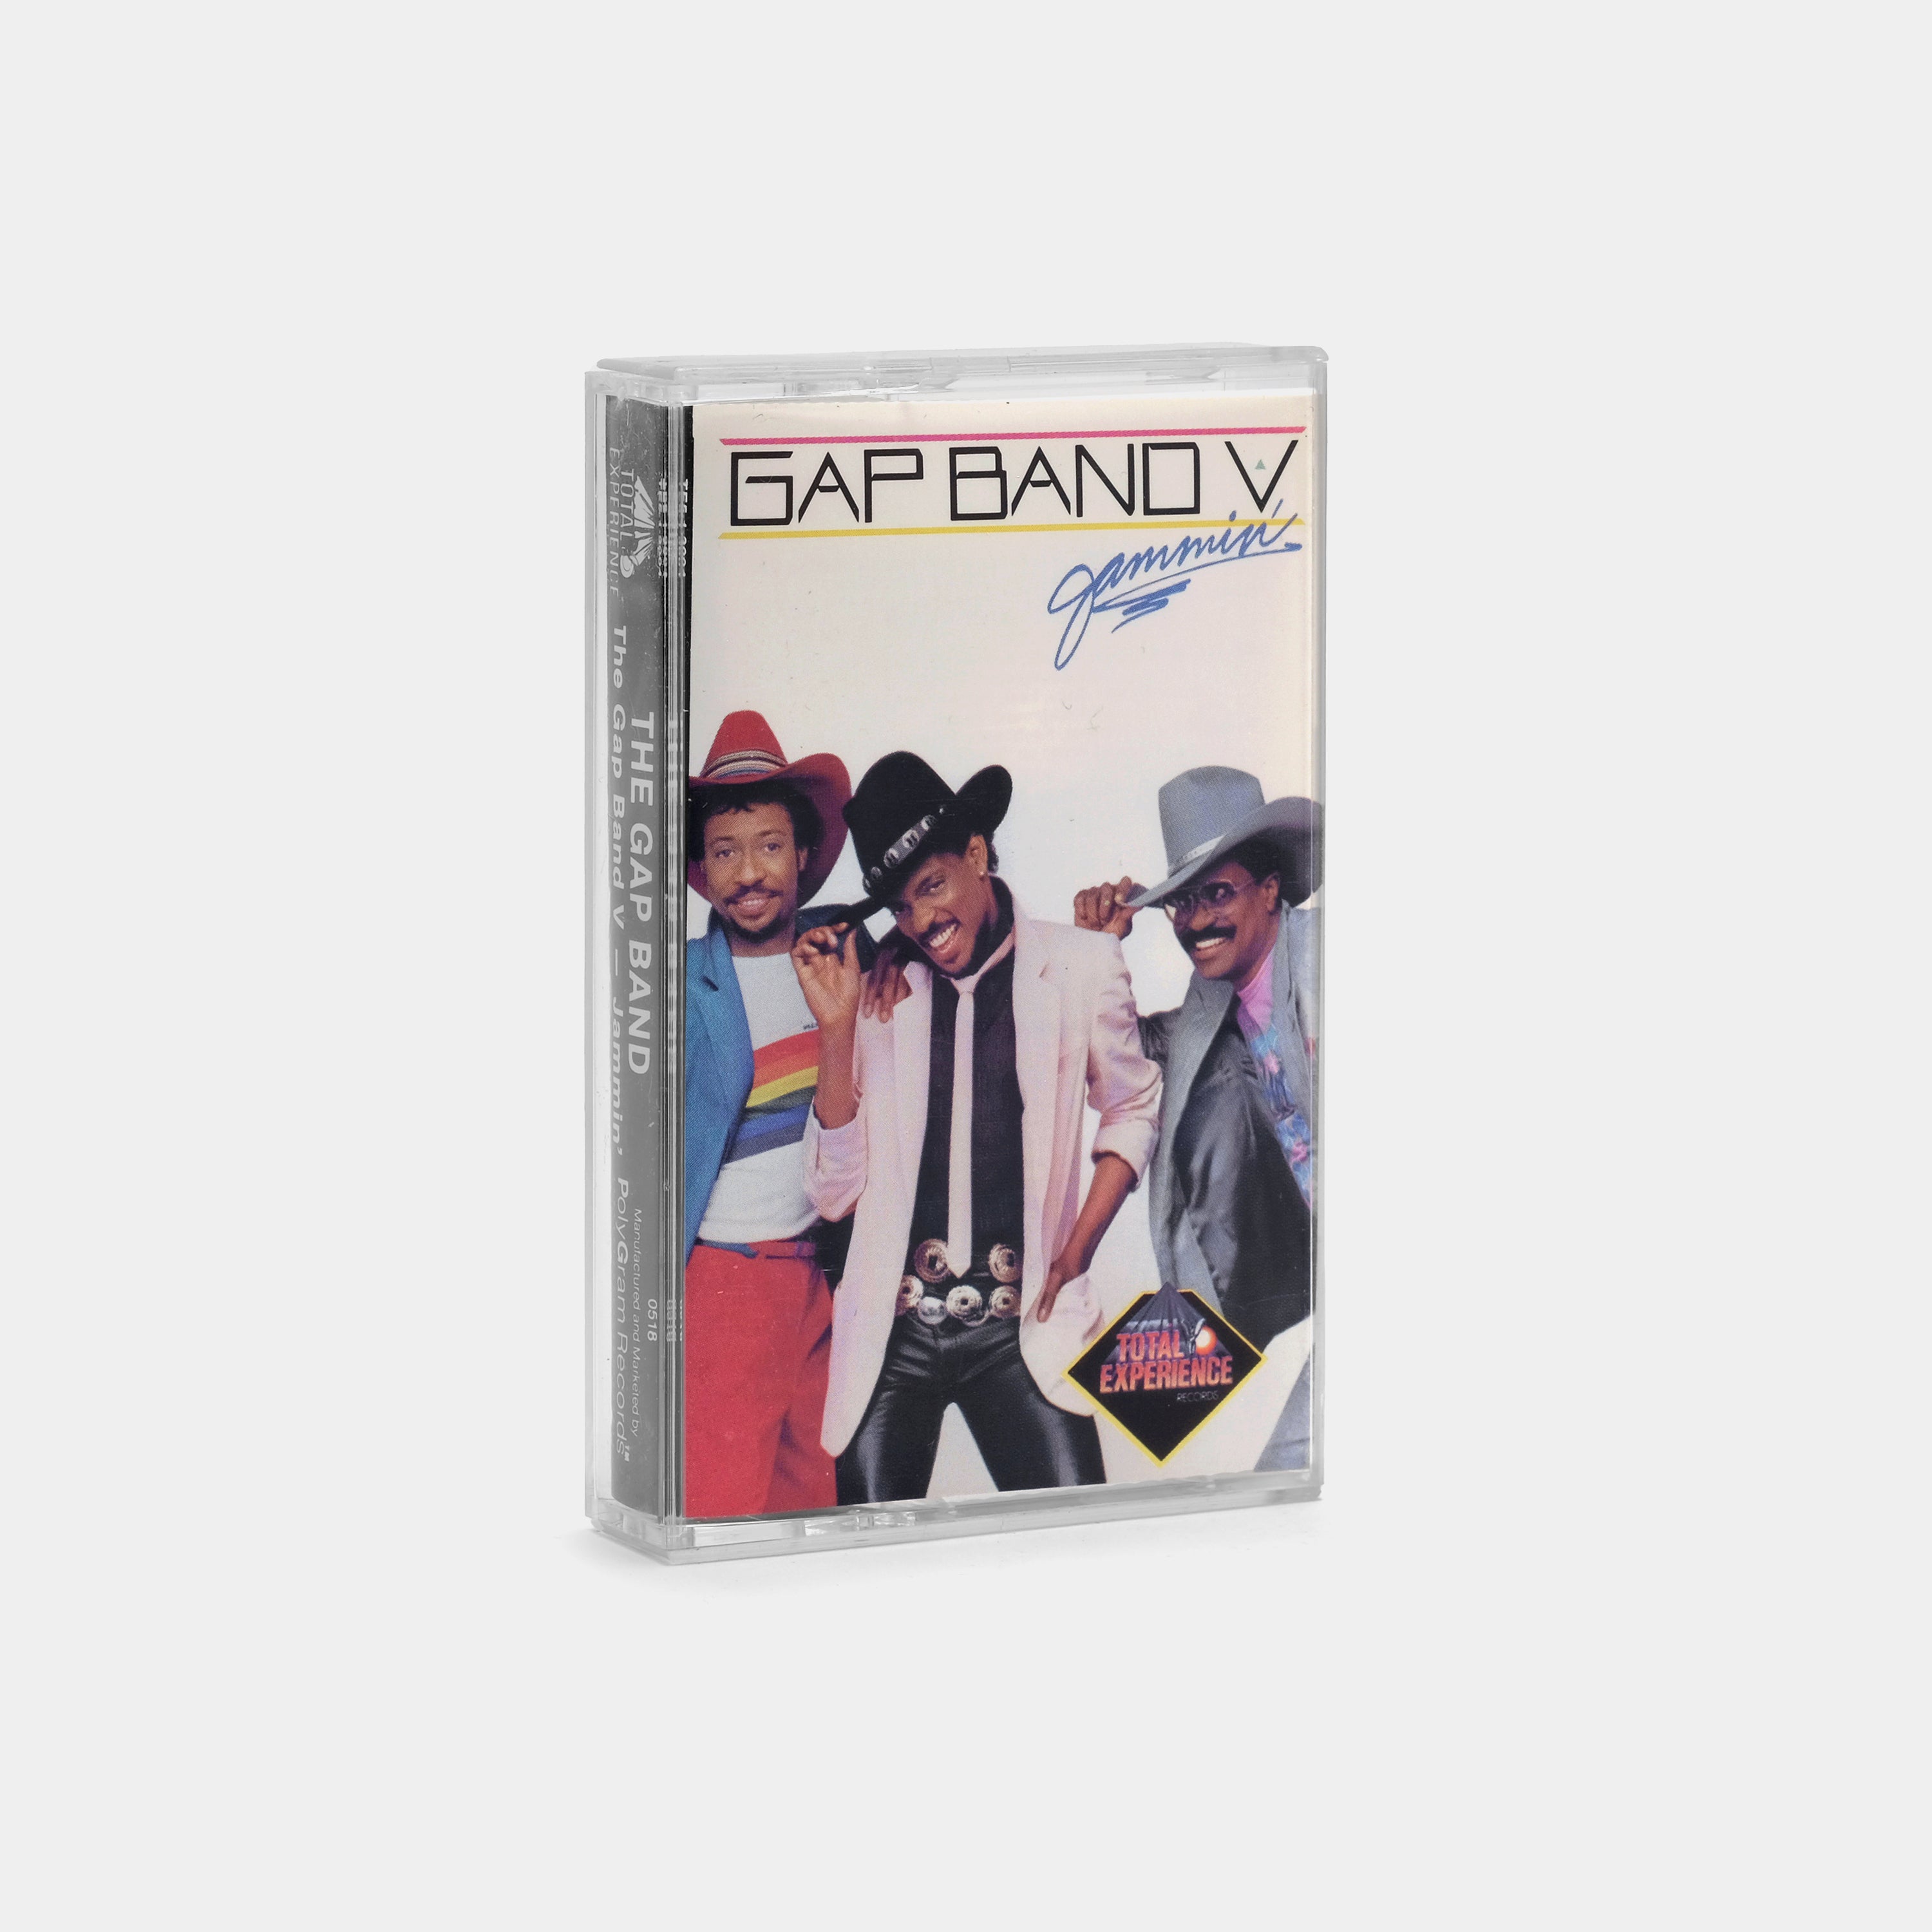 The Gap Band - Gap Band V - Jammin' Cassette Tape